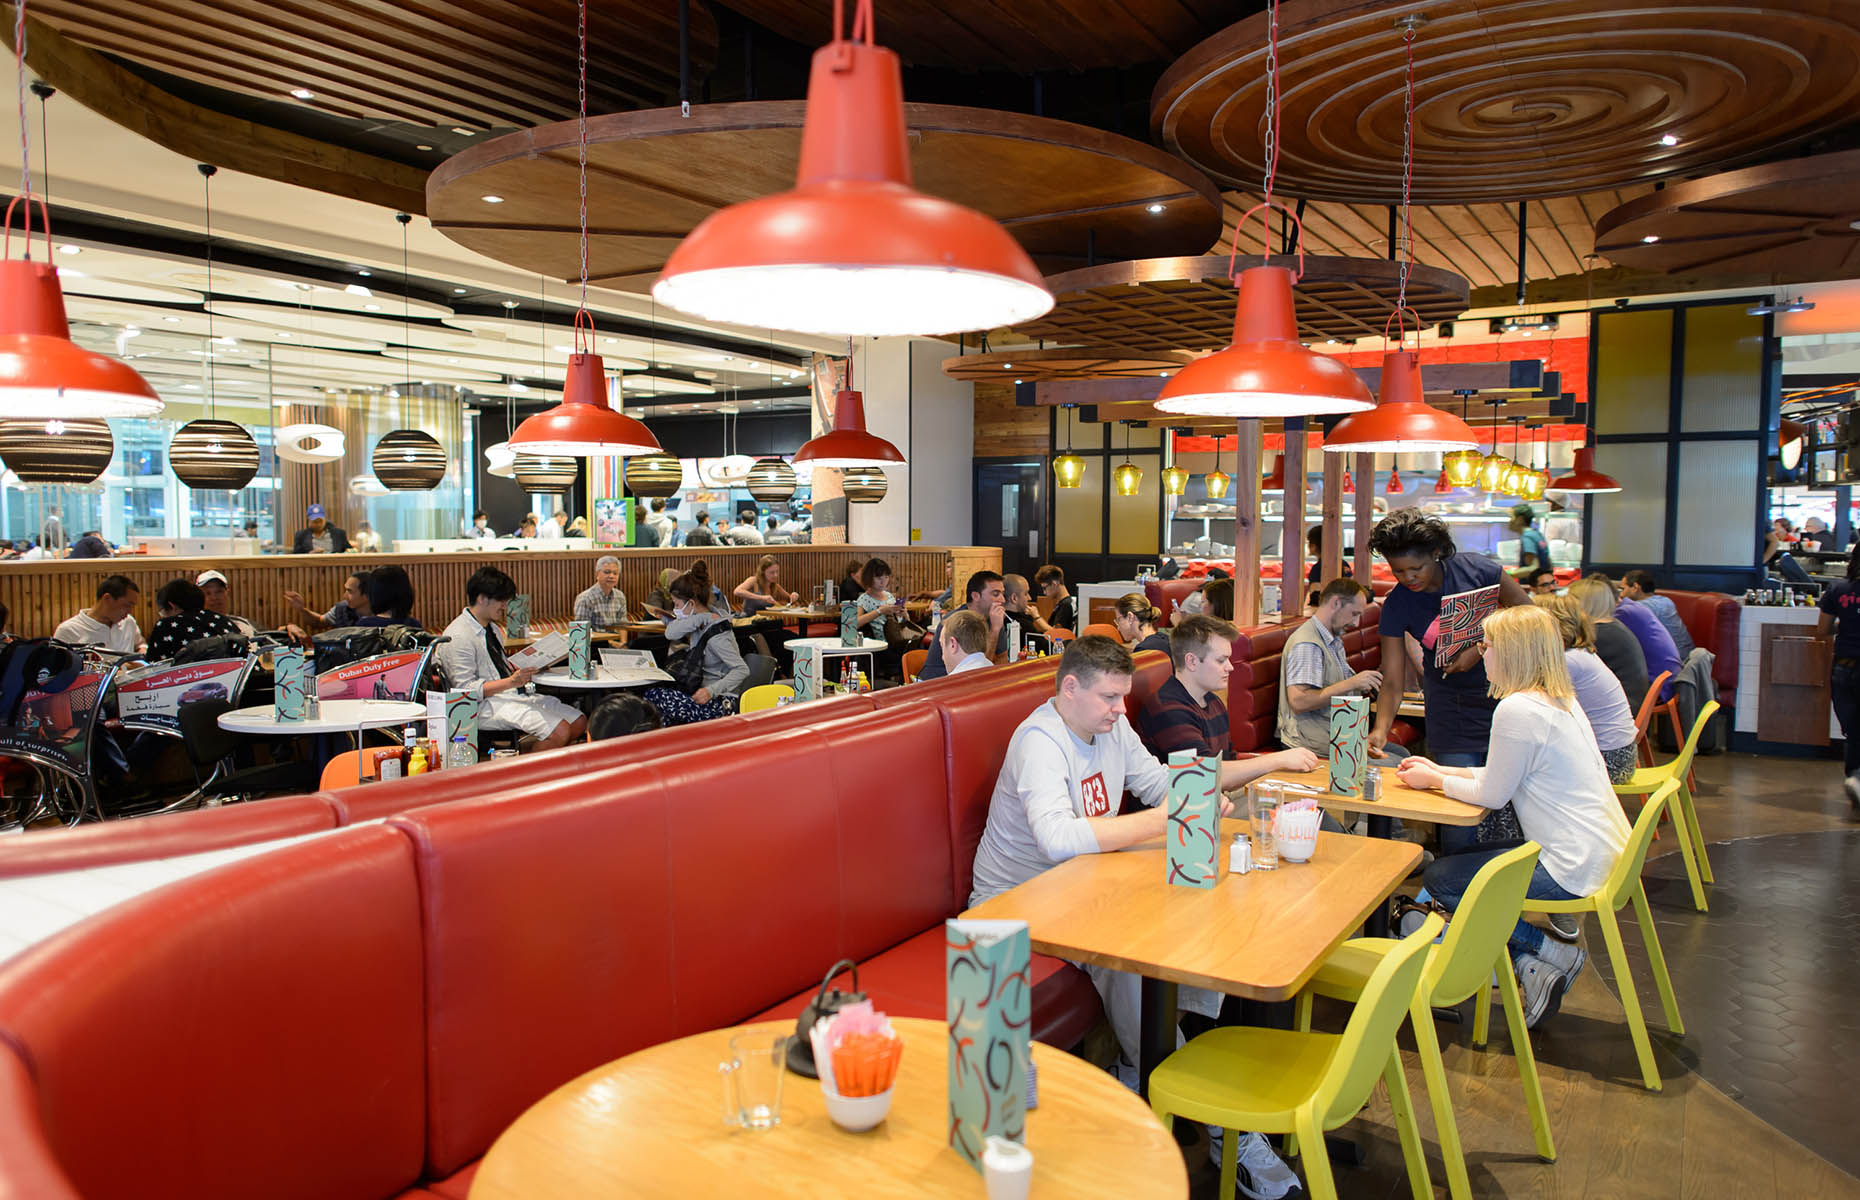 Airport restaurant (Image: Sorbis/Shutterstock)